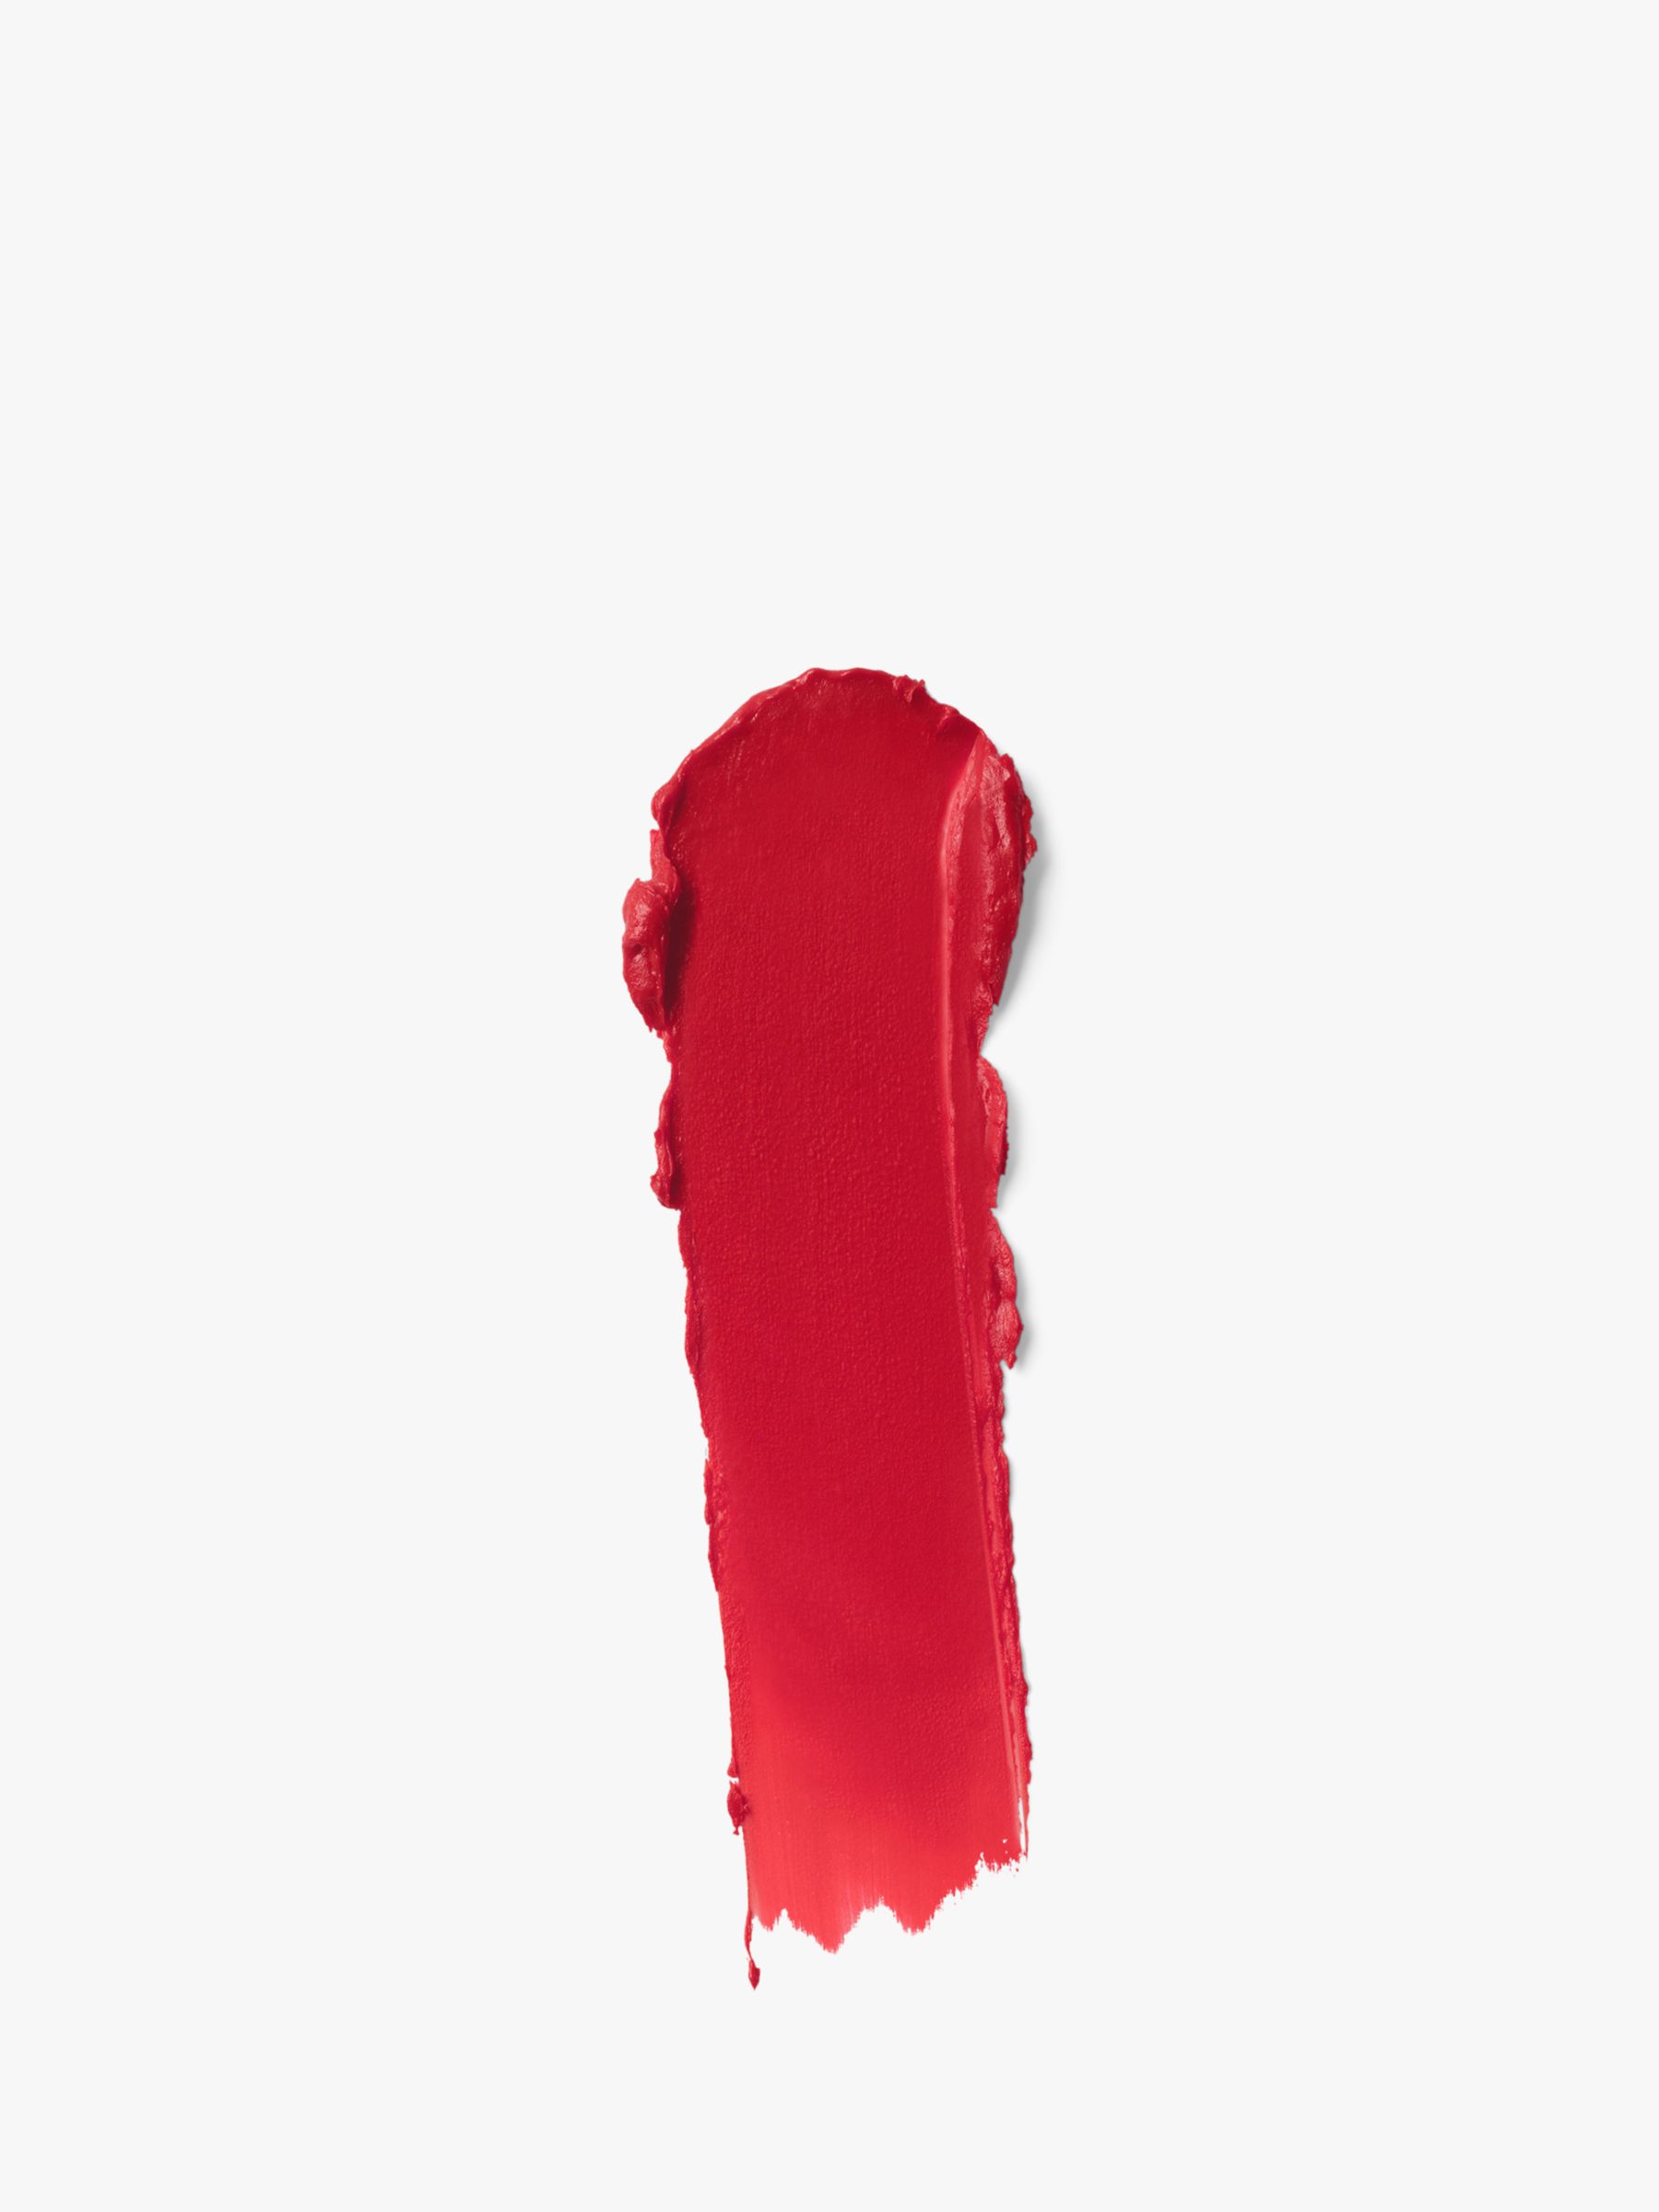 Gucci Rouge À Lèvres Satin Lipstick, 502 Eadie Scarlet 2